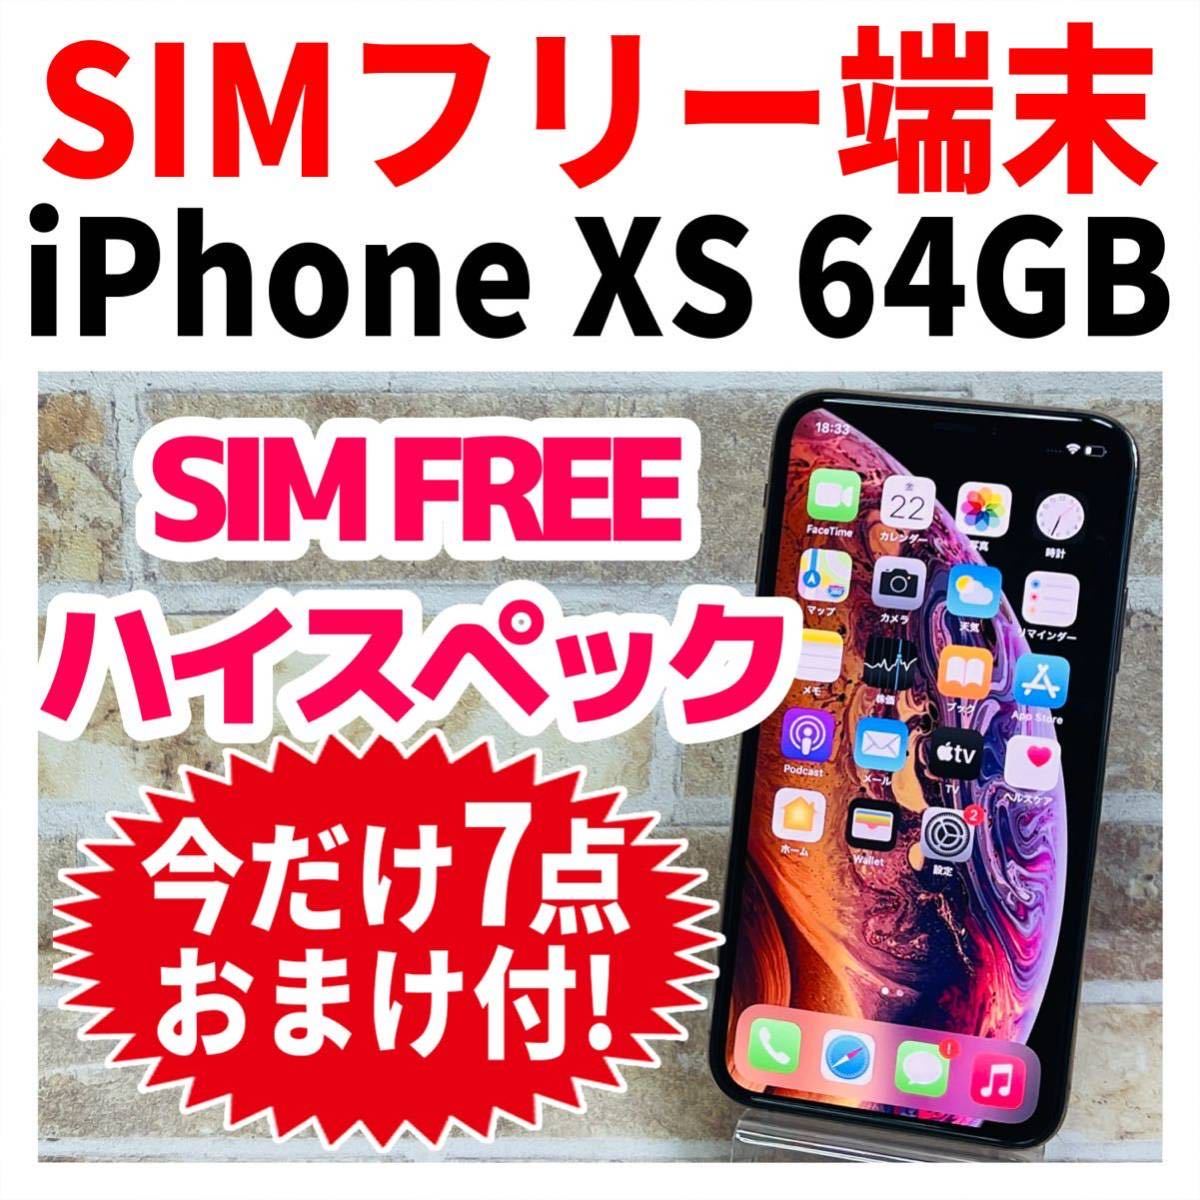 誠実 iPhone Xs Silver 64 GB SIMフリー - linsar.com